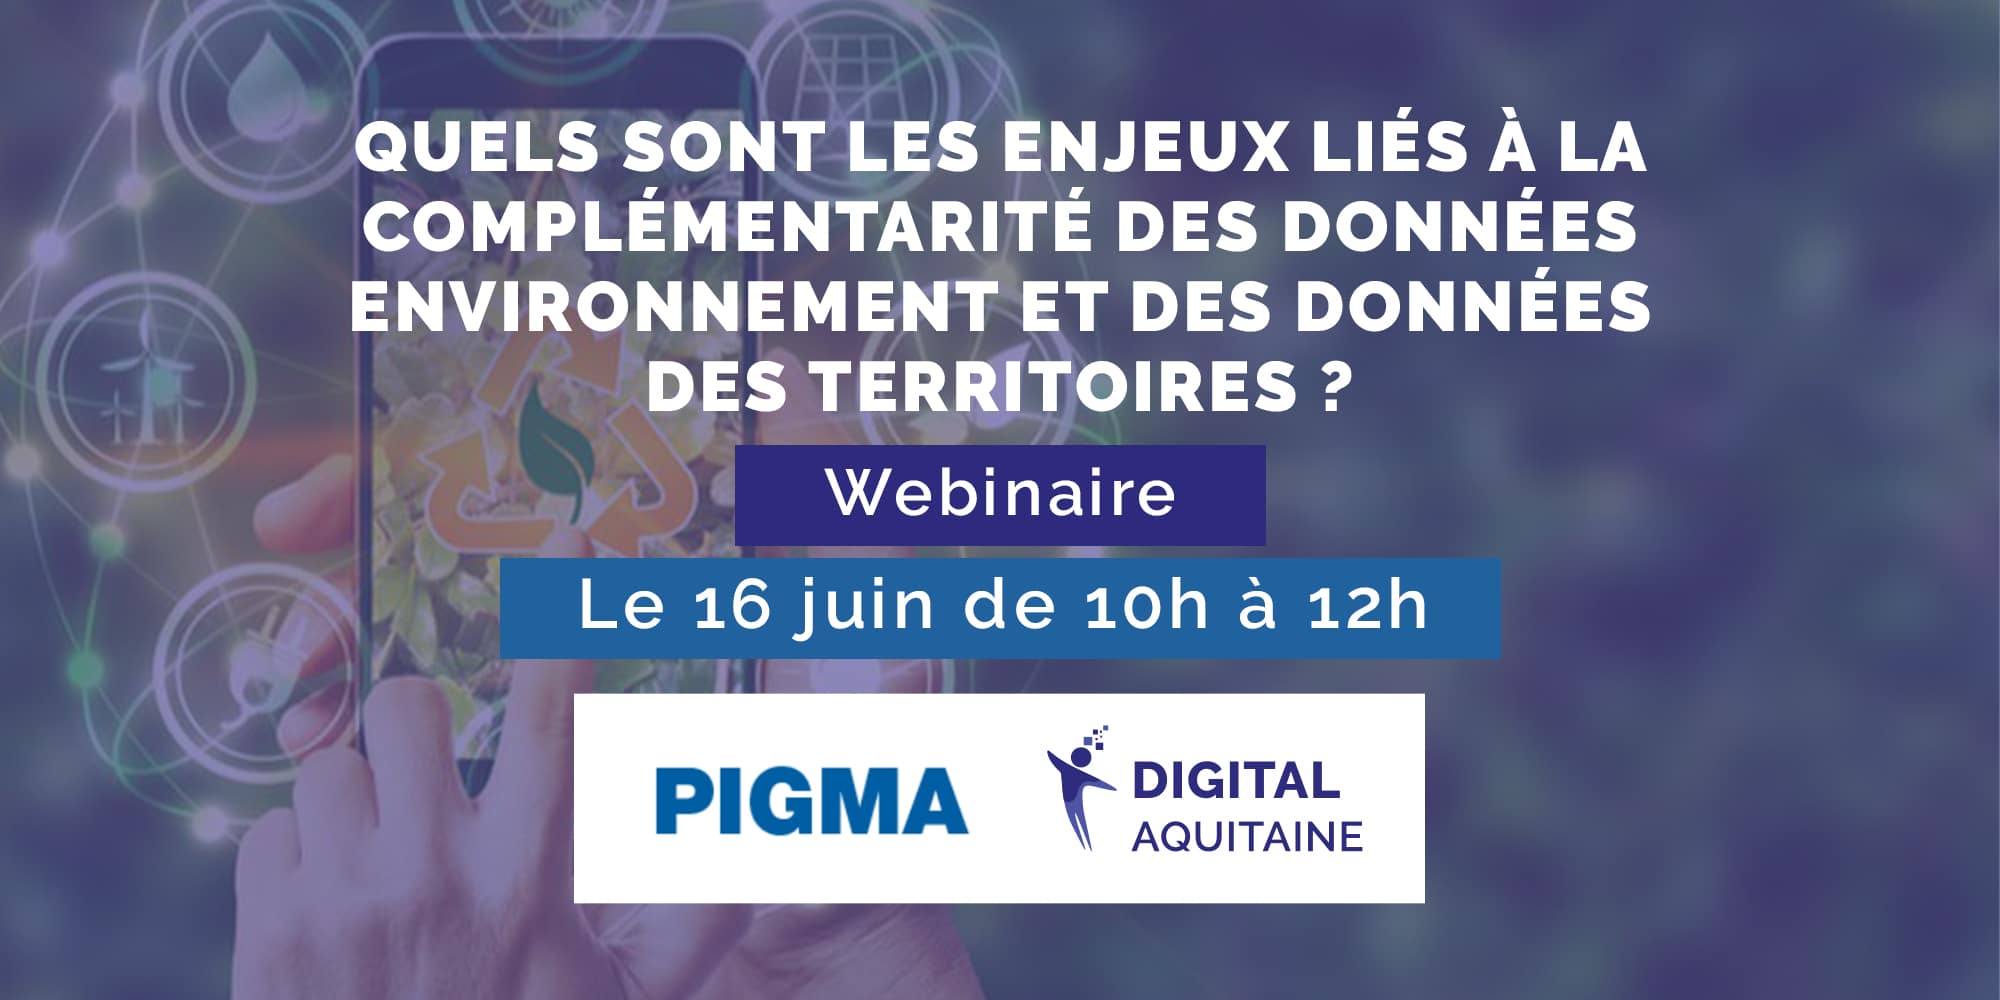 PIGMA Digital Aquitaine